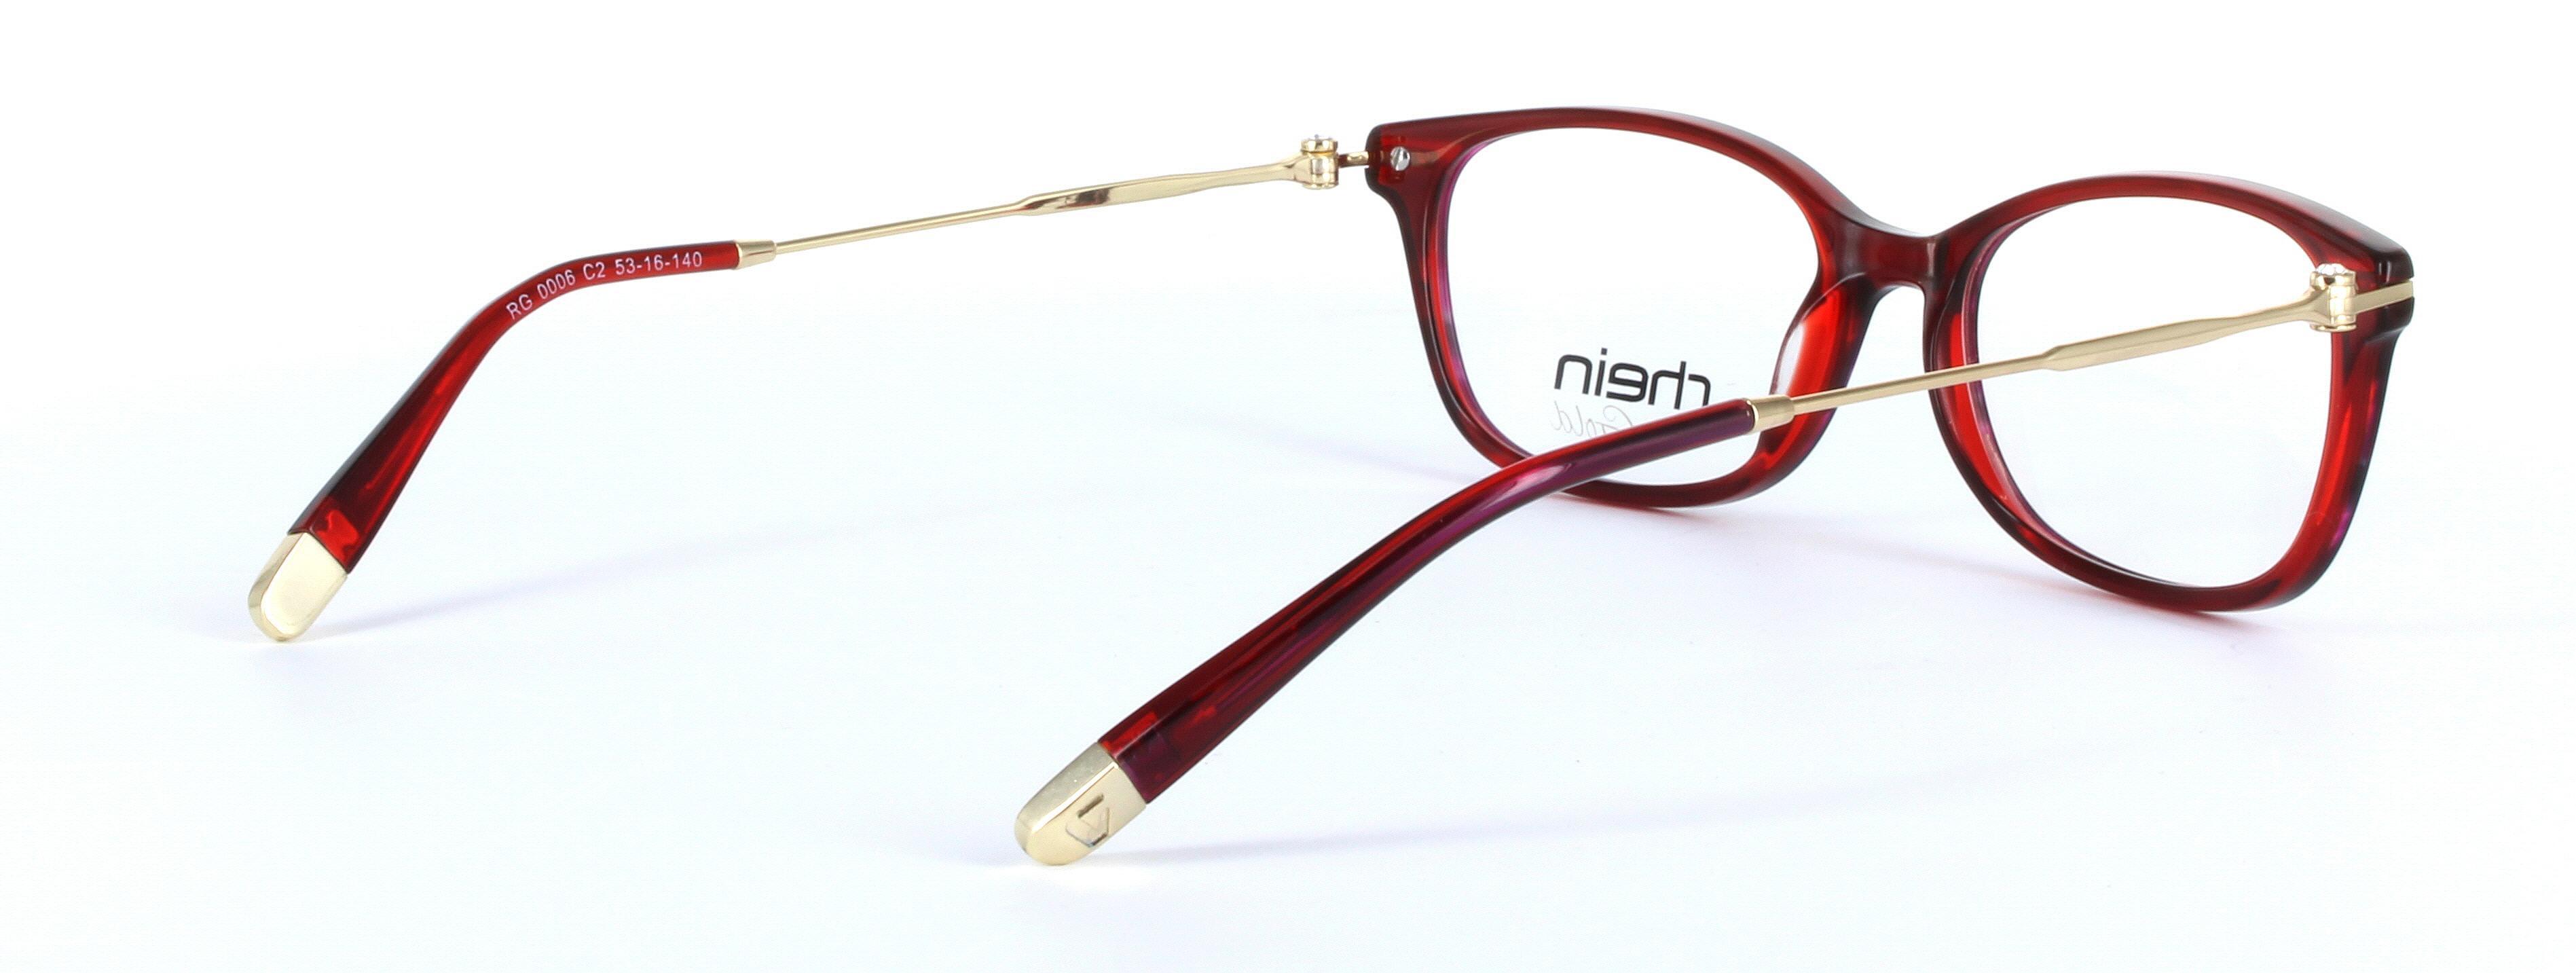 Locarno Red Full Rim Oval Plastic Glasses - Image View 4